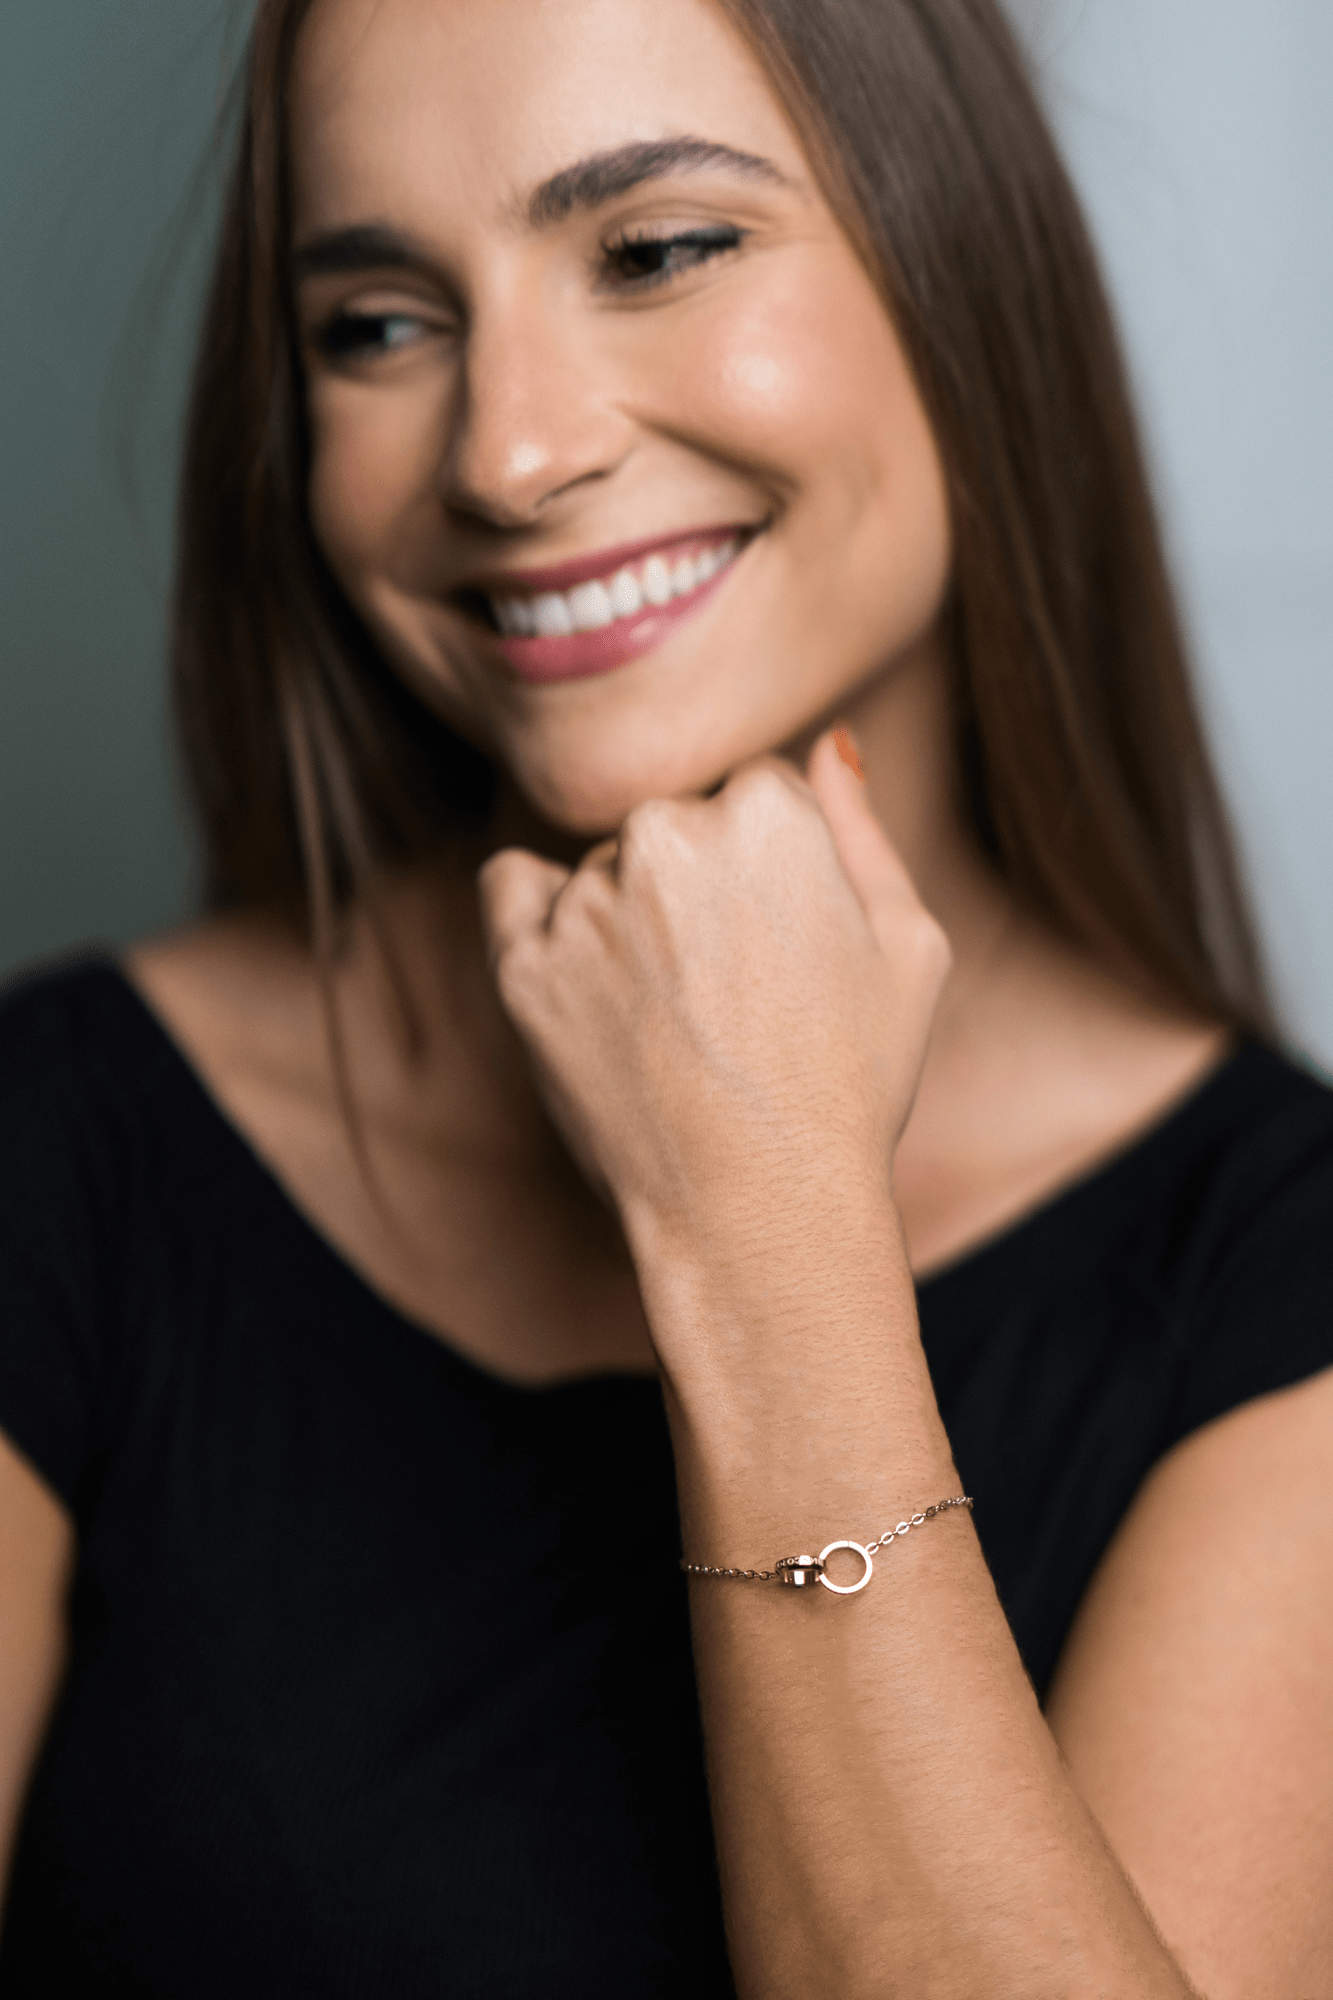 Bianco Rosso Watches Bracelets To My Girlfriend - Eternity Bracelet rologia cyprus greece